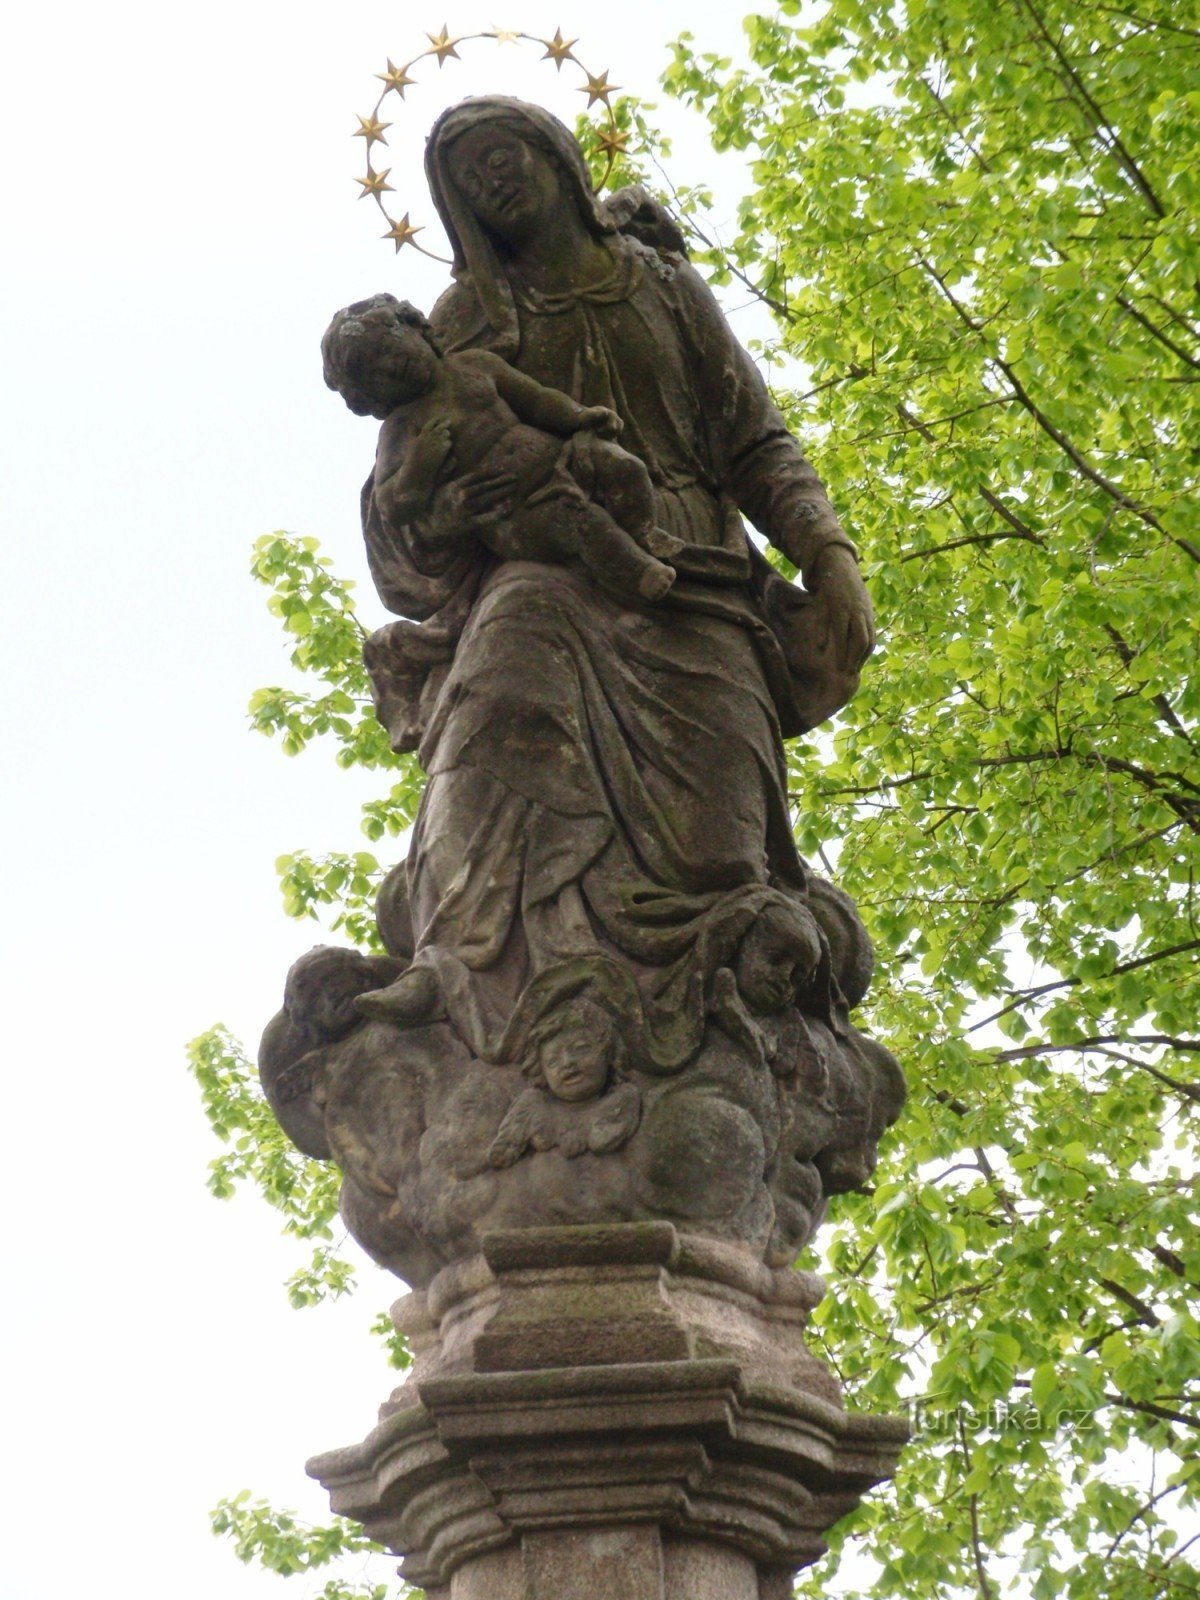 Žďár nad Sázavou - một cột có tượng Đức Mẹ Đồng trinh